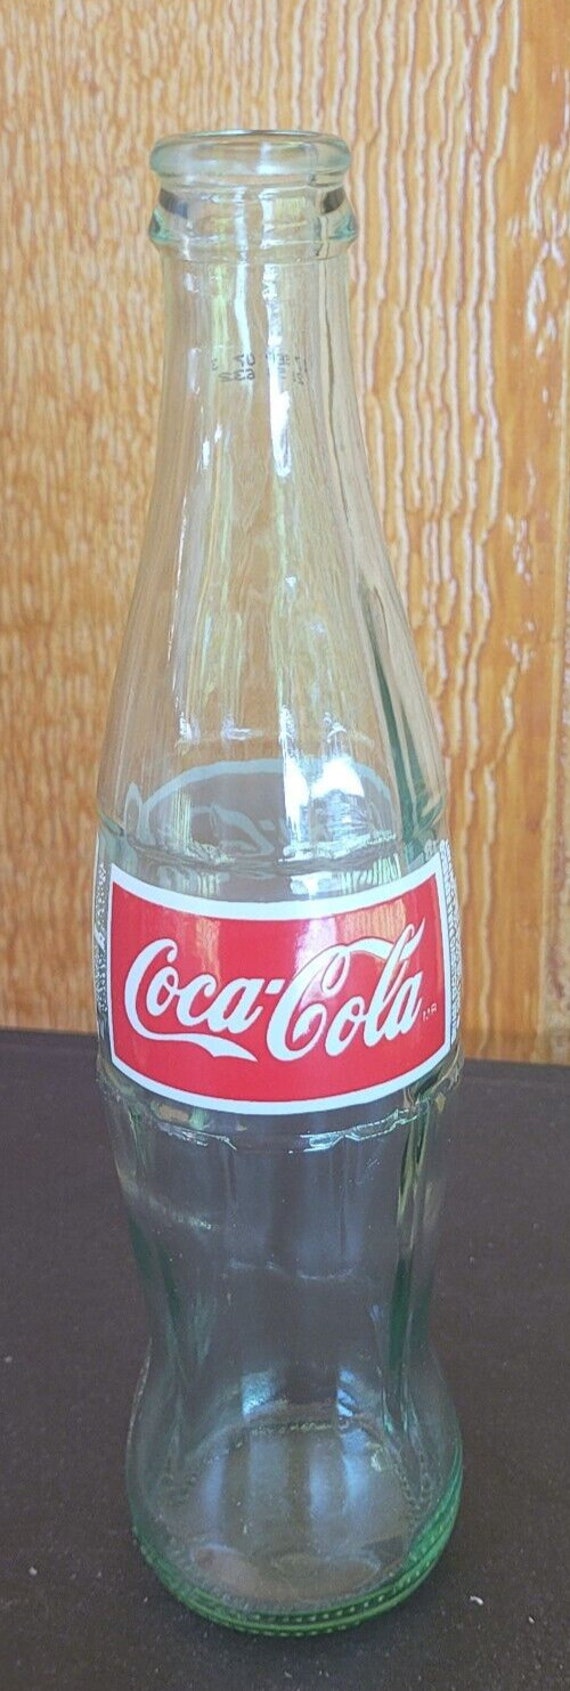 Coke Coca-cola Glass 1 Liter Bottles PFAND-WERT-FLASCHE Schutzmark